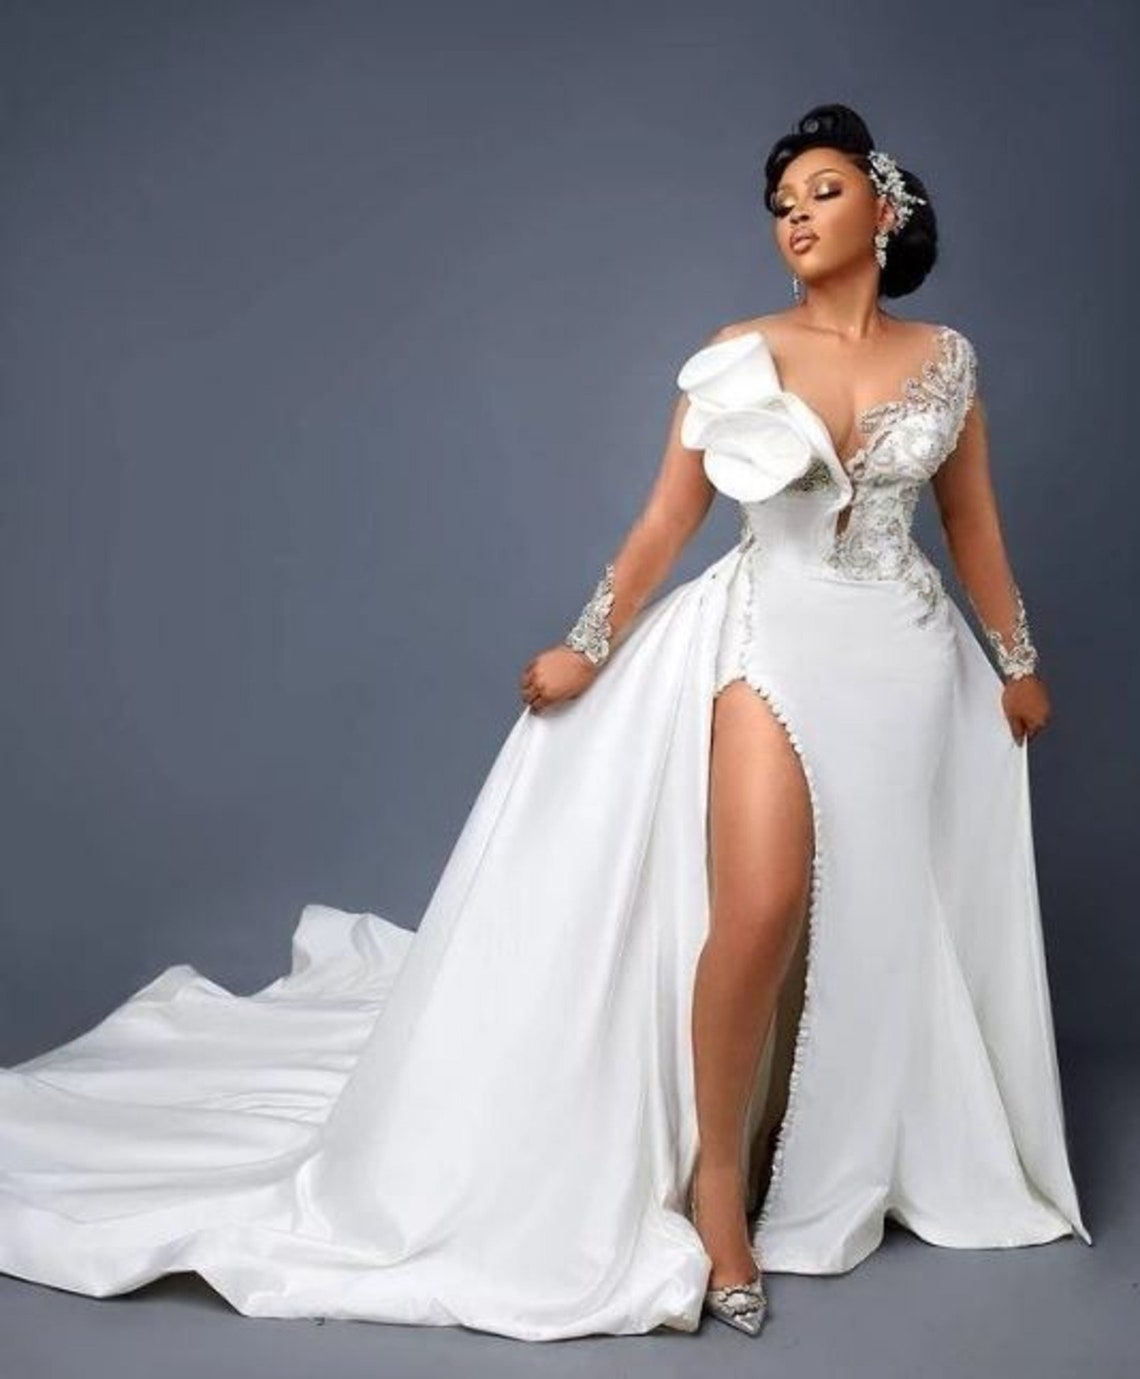 Mermaid Wedding Dress With Detachable Train African Wedding - Etsy